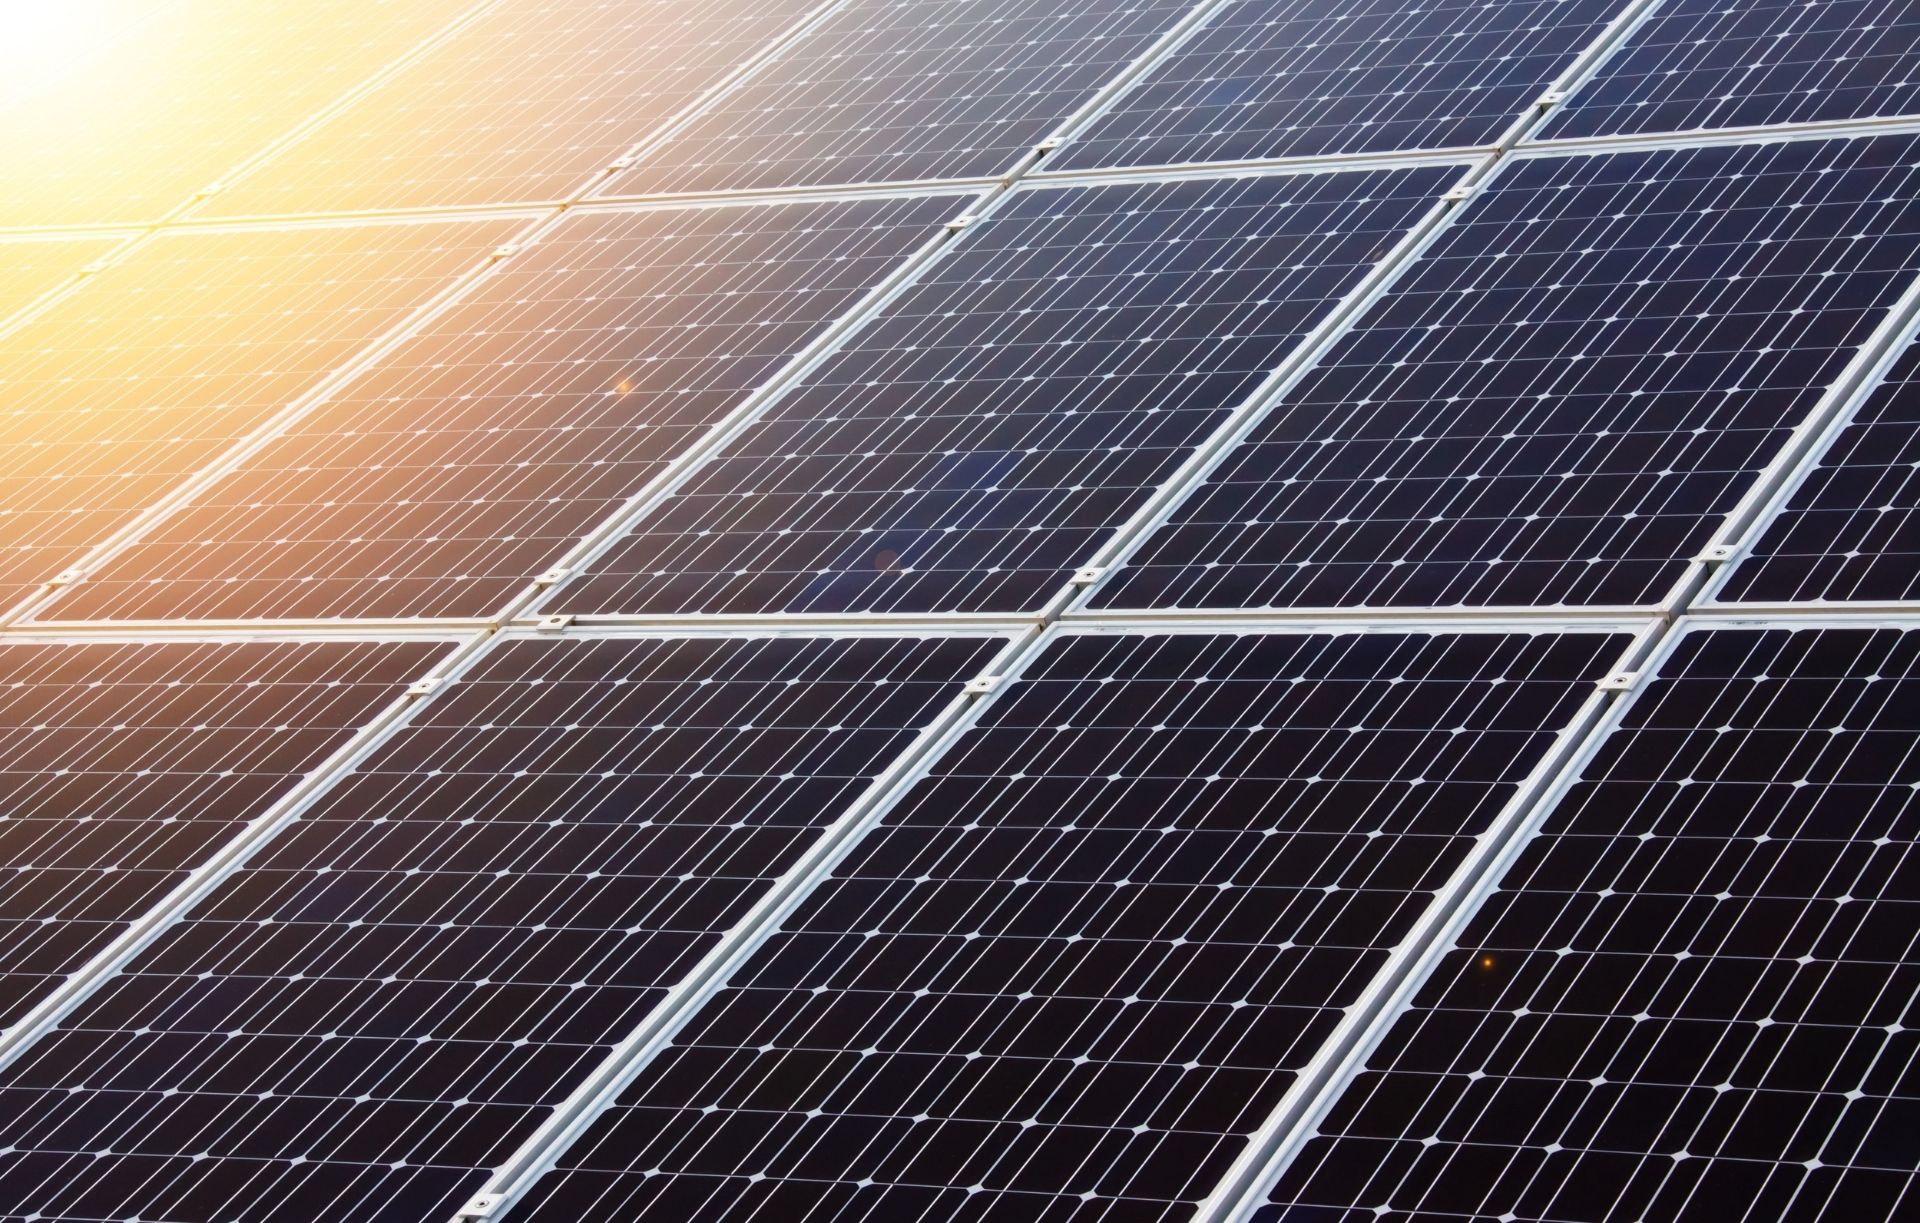 ECOINSIDE estreia fundo de 15 milhões de euros para investir em projetos de energias renováveis